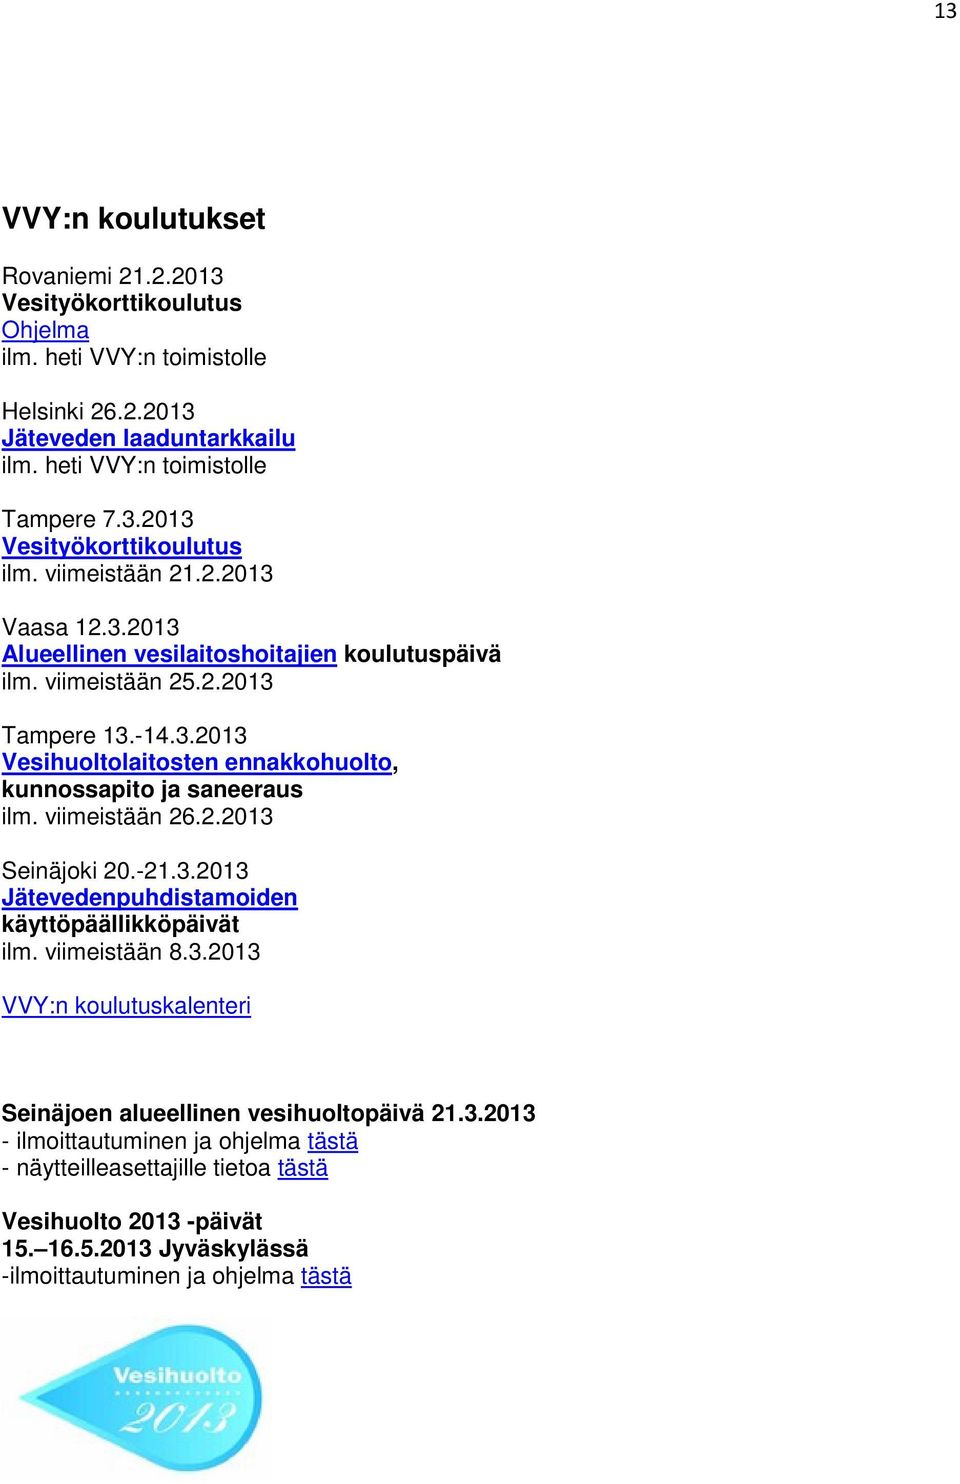 viimeistään 26.2.2013 Seinäjoki 20.-21.3.2013 Jätevedenpuhdistamoiden käyttöpäällikköpäivät ilm. viimeistään 8.3.2013 VVY:n koulutuskalenteri Seinäjoen alueellinen vesihuoltopäivä 21.3.2013 - ilmoittautuminen ja ohjelma tästä - näytteilleasettajille tietoa tästä Vesihuolto 2013 -päivät 15.